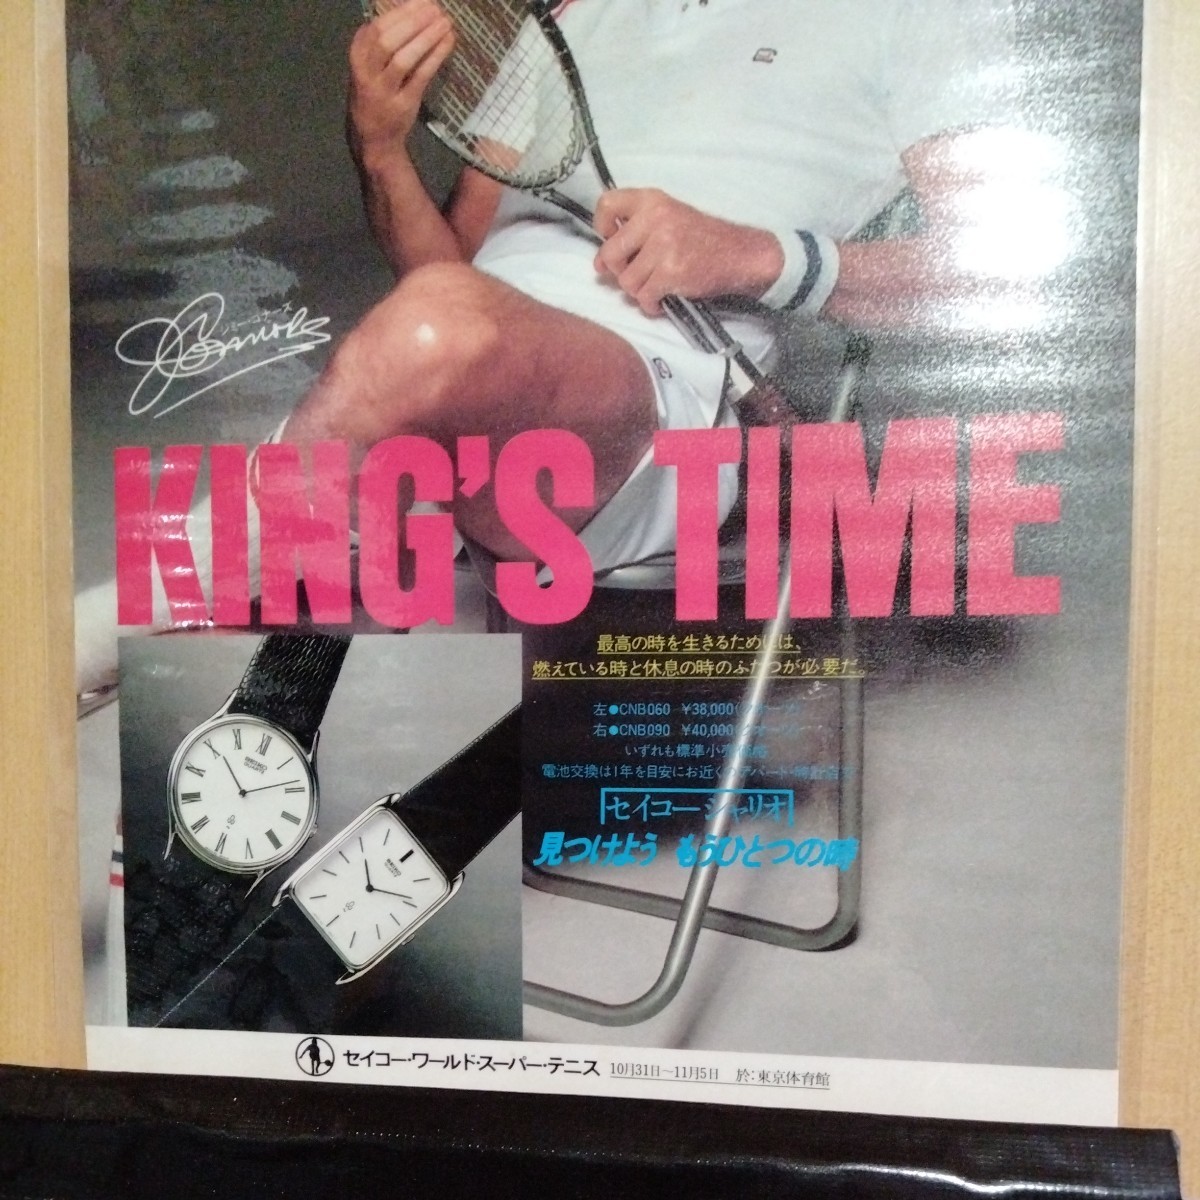 ジミーコナーズセイコー時計A4ラミネート雑誌切り抜きポスターインテリア広告テニスウィルソン_画像2